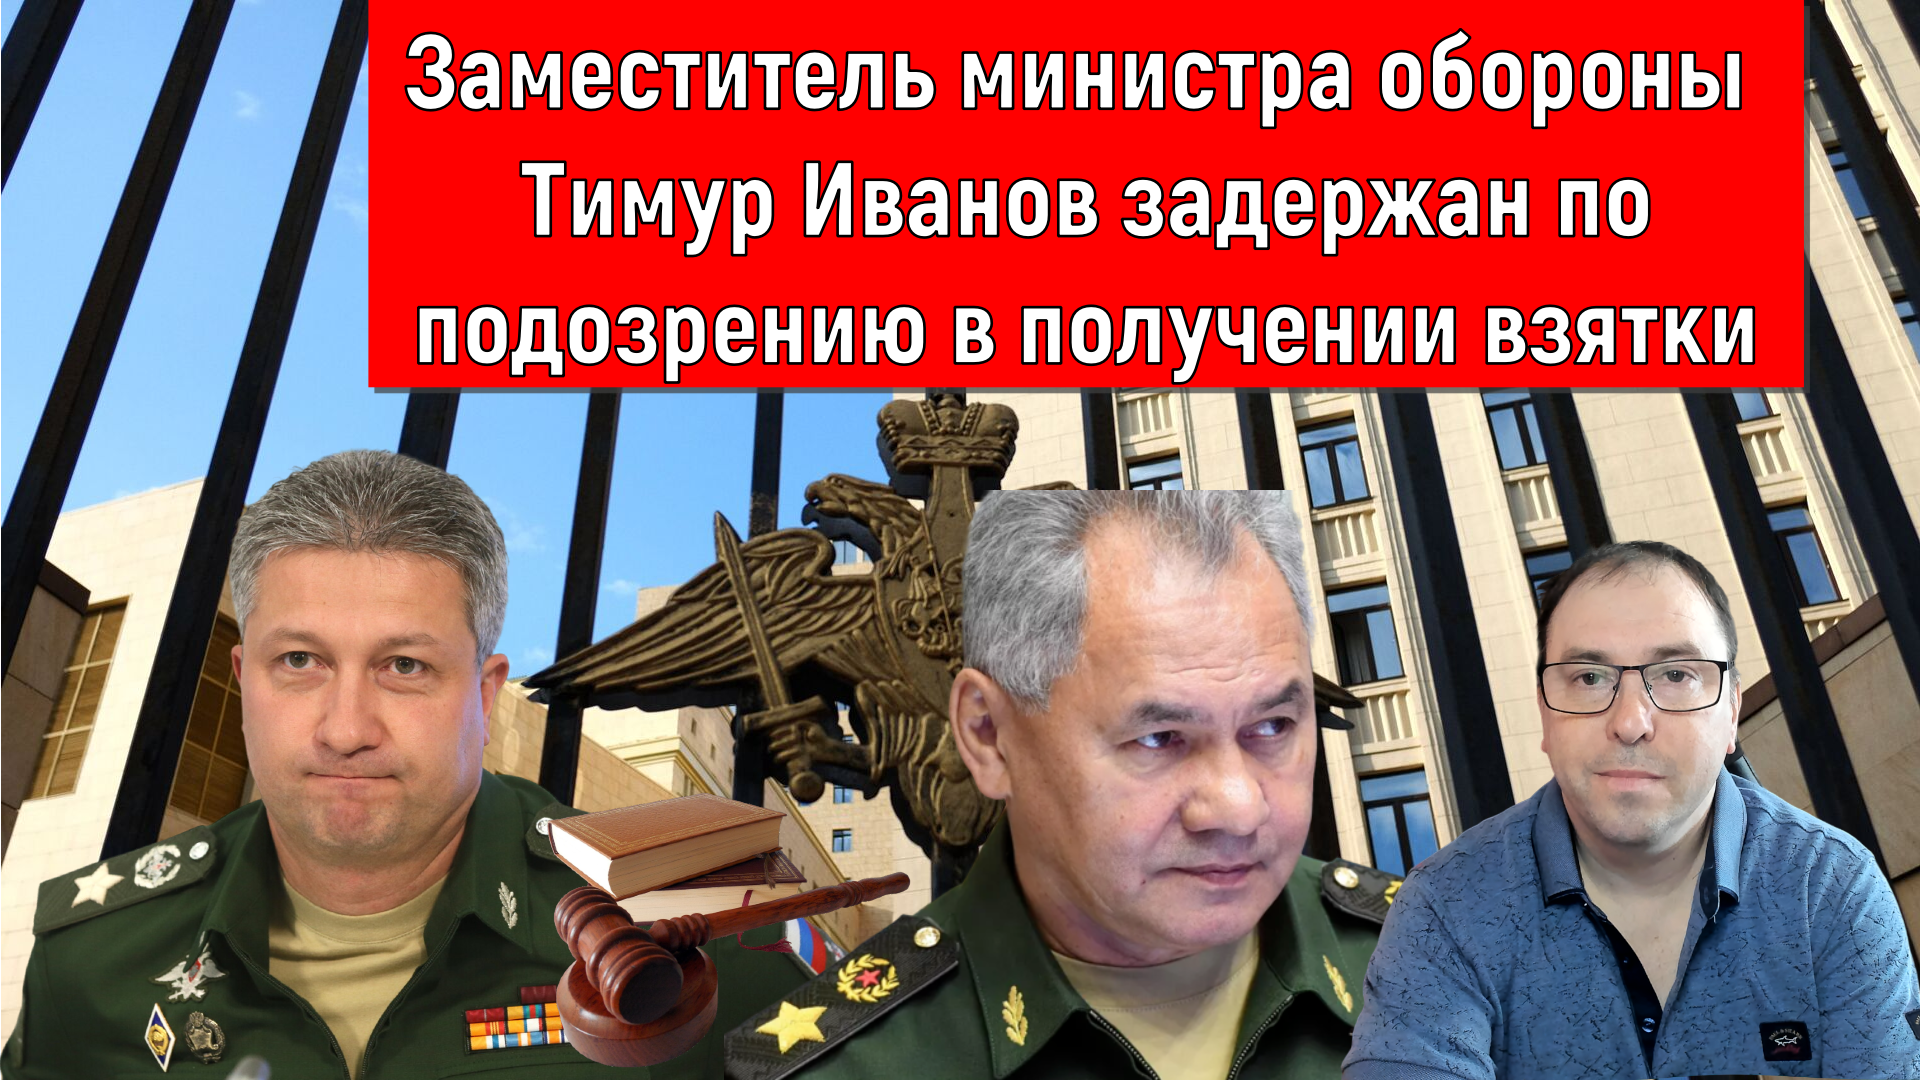 Заместитель министра обороны Тимур Иванов задержан по подозрению в получении взятки